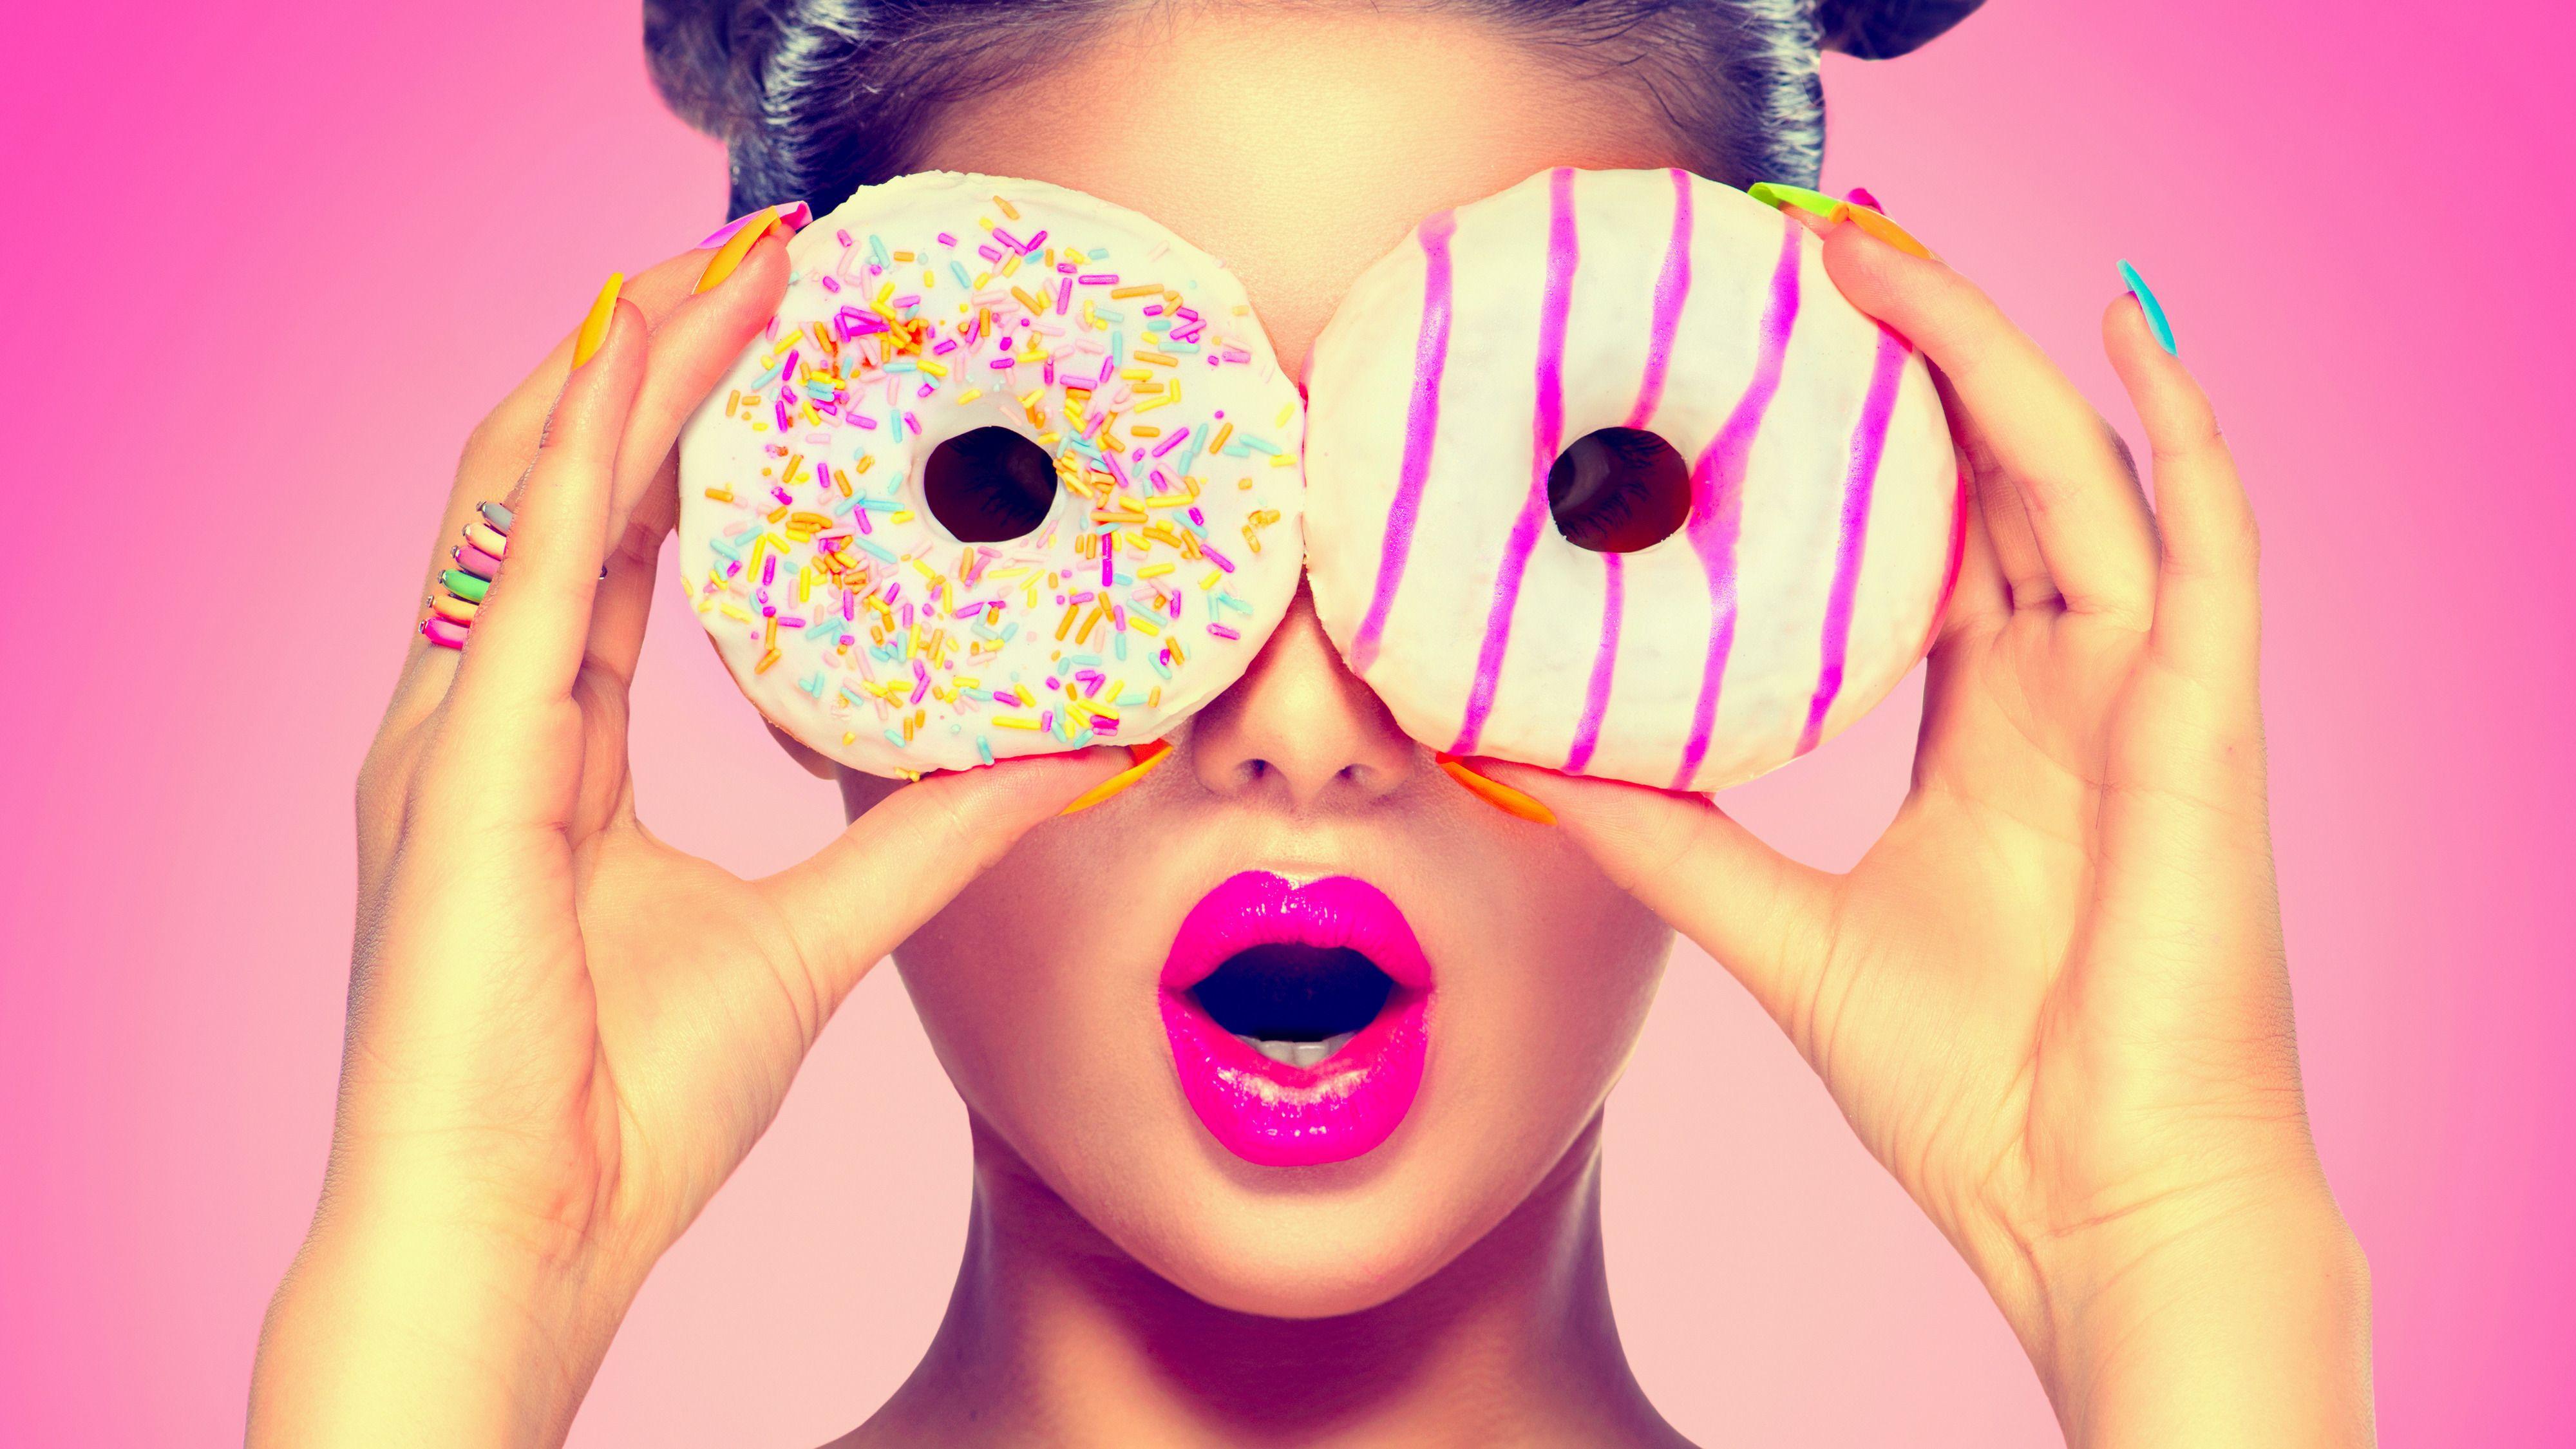 Картинка на аватарку для женщины прикольные. Девушка с пончиком. Фотосессия с пончиками. Фотосессия со сладостями. Яркая девушка.